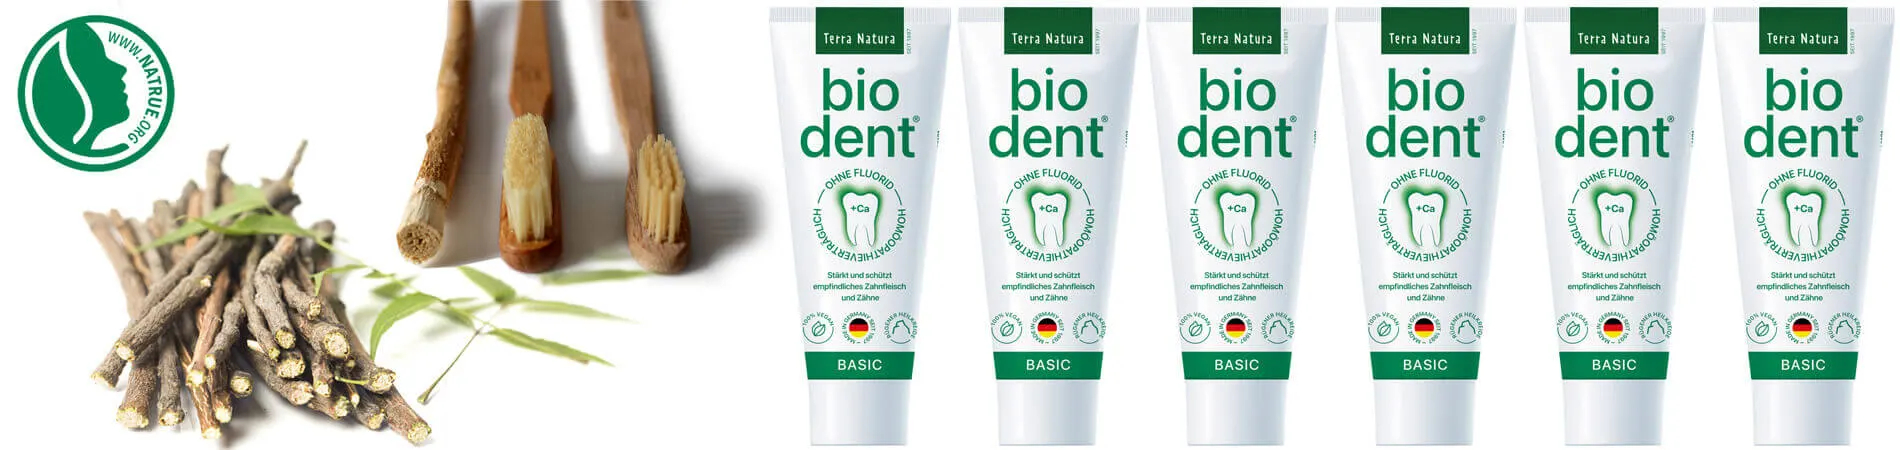 Biodent Basics Dentifricio senza fluoro acquistare Bio...